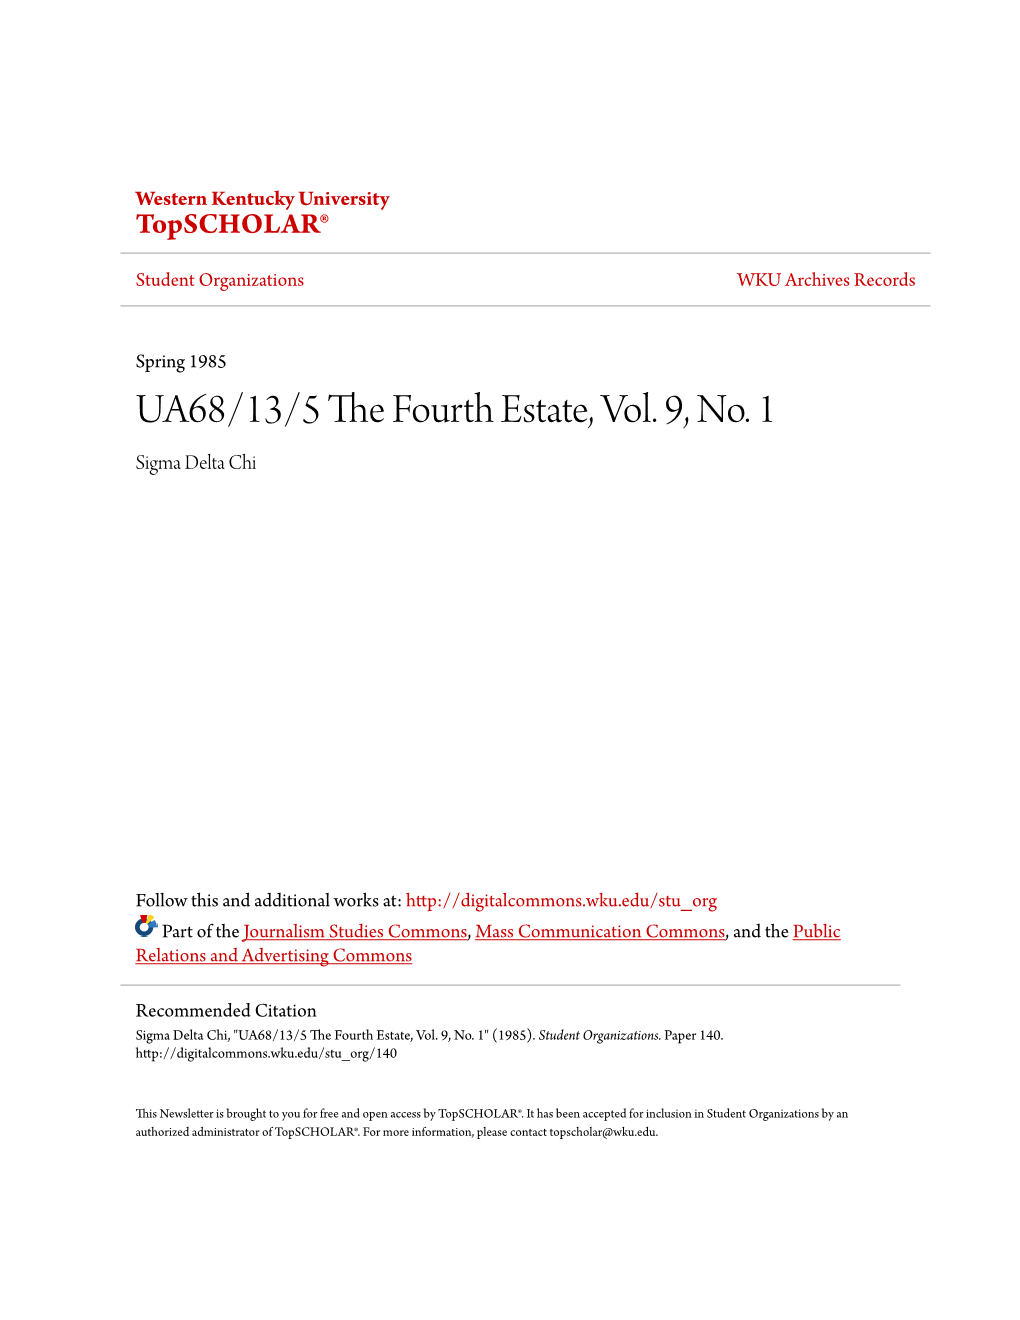 UA68/13/5 the Fourth Estate, Vol. 9, No. 1